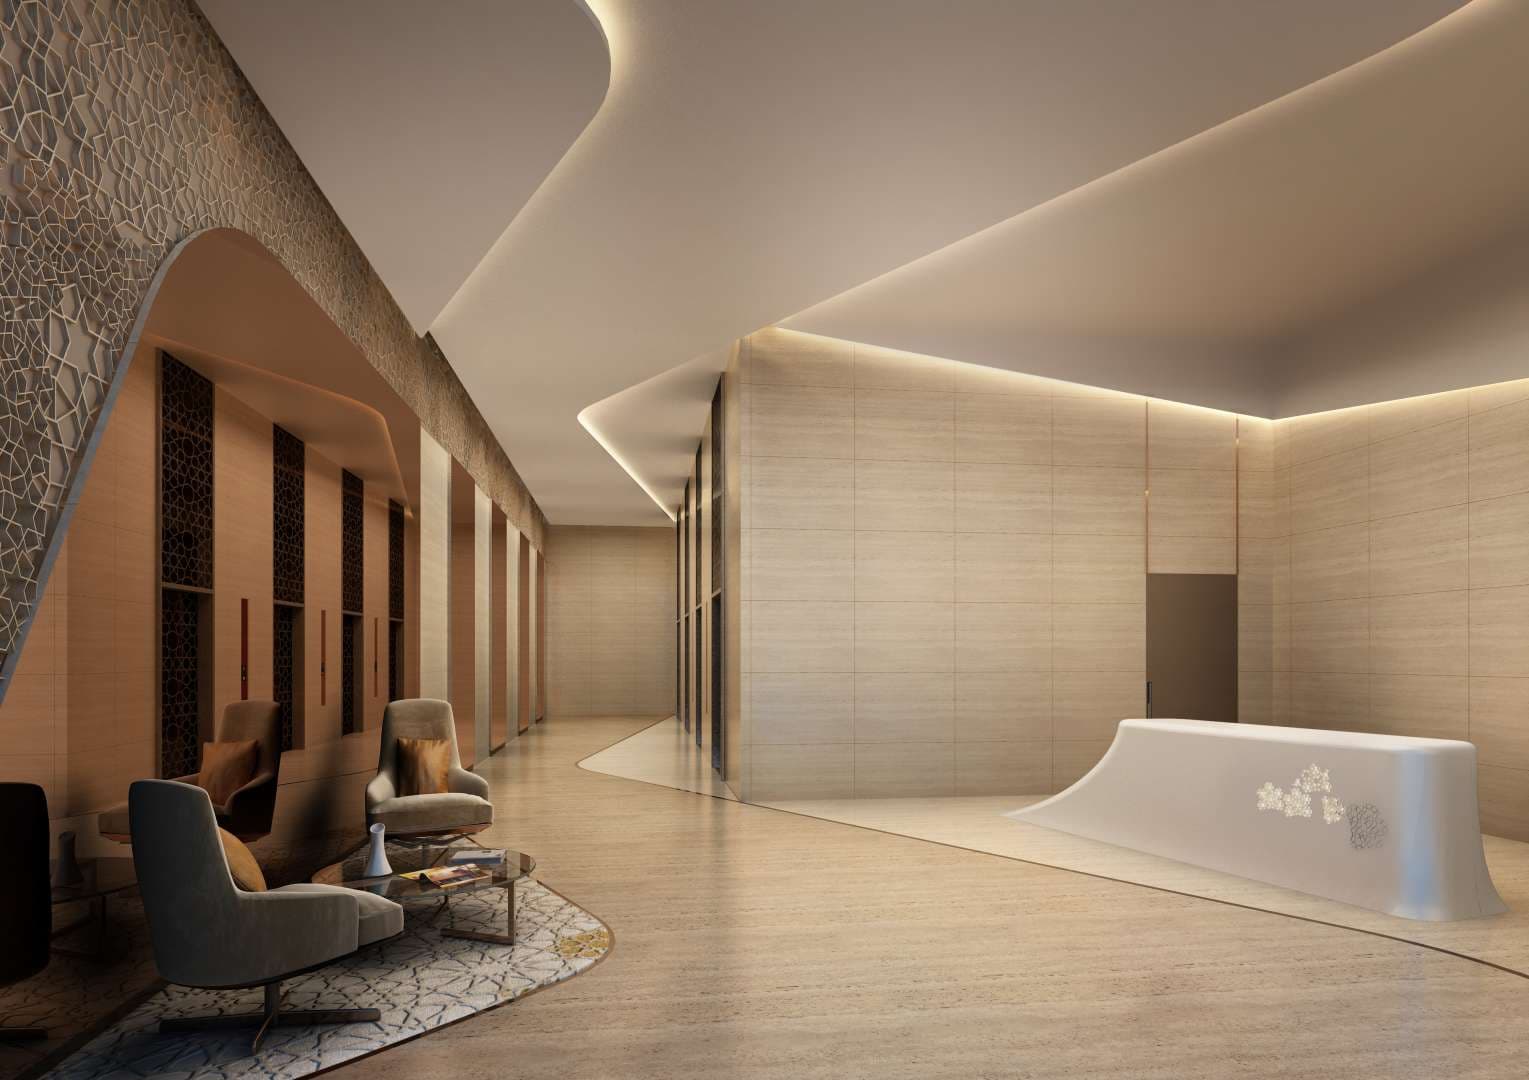 Studio Bedroom Apartment For Rent Avani Palm View Hotel Suites Lp05491 13b5d4822e2e6100.jpg